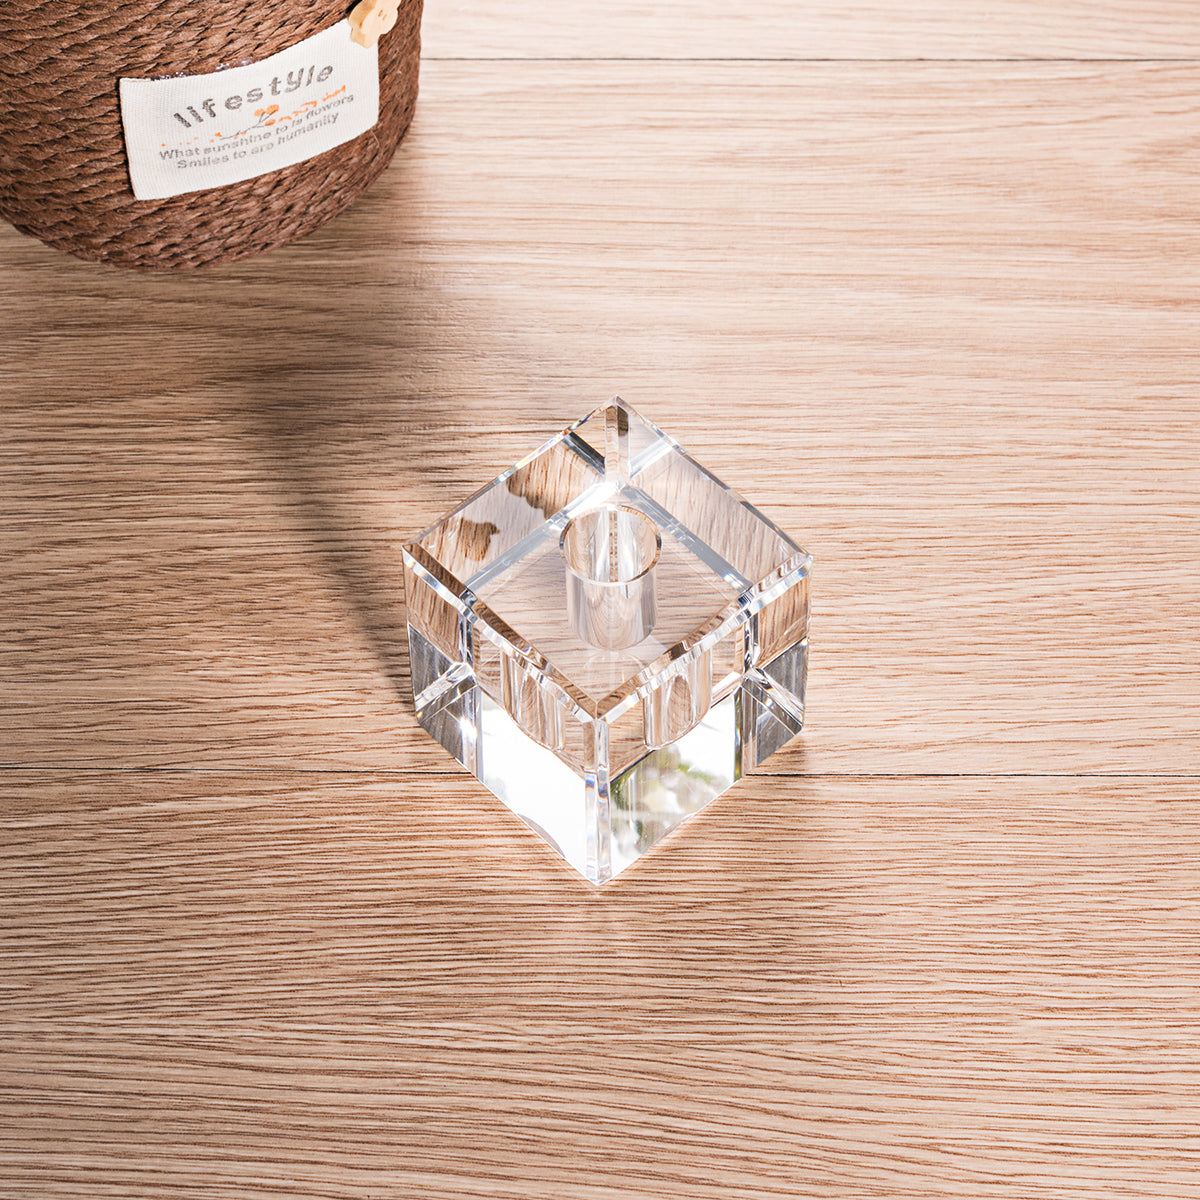 Square Shaped Crystal Penholder